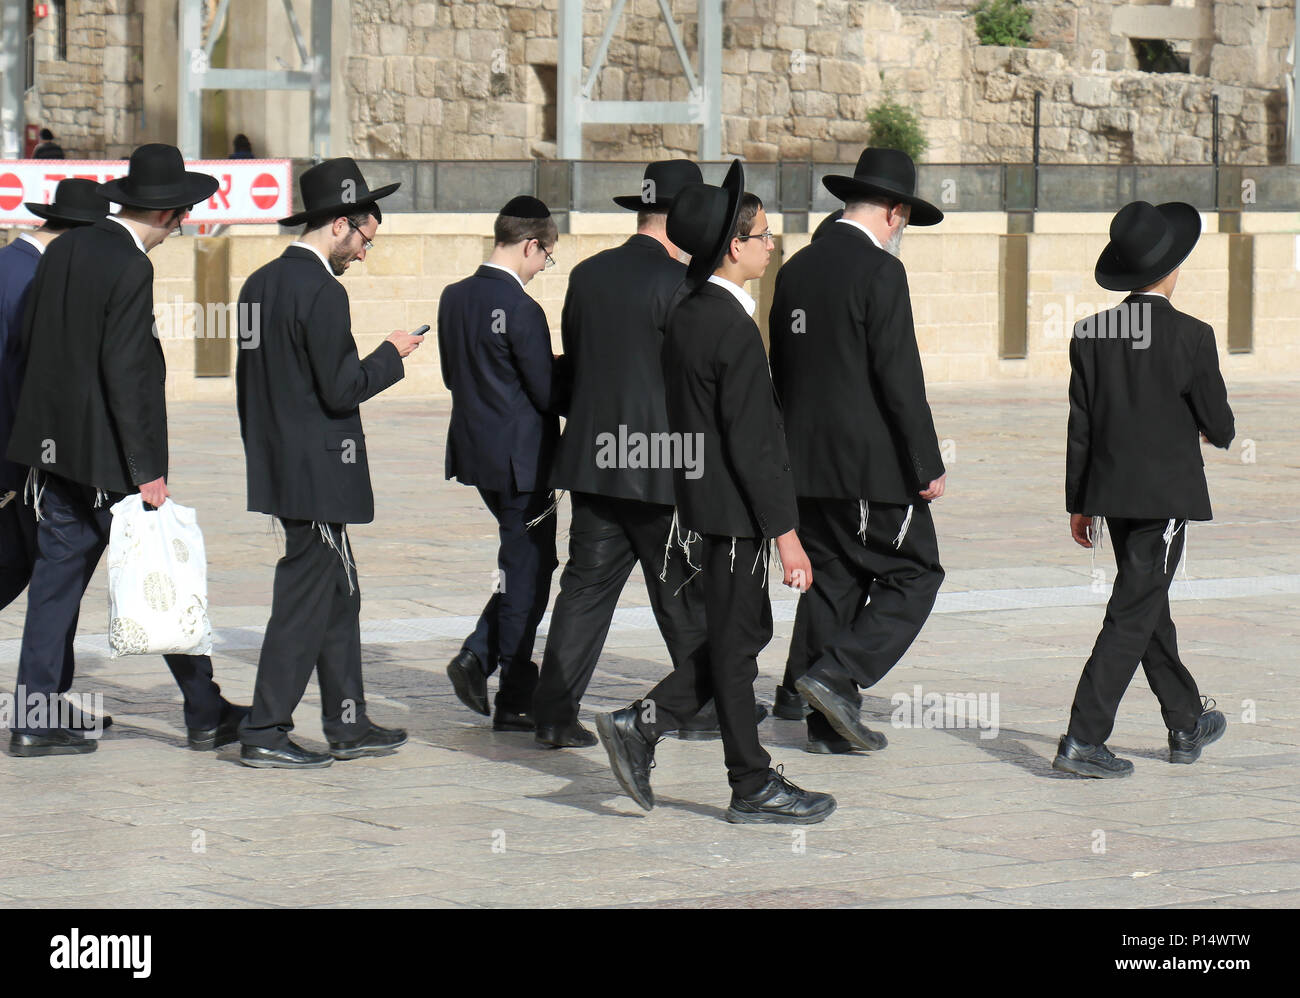 JERUSALEM, Israel - 25. MAI 2018: Eine Gruppe von schwarzen Hut Gruppe der ultra-orthodoxen jüdischen Männern von Chabad Lubavitch Bewegung in Jerusalem Altstadt wandern i Stockfoto